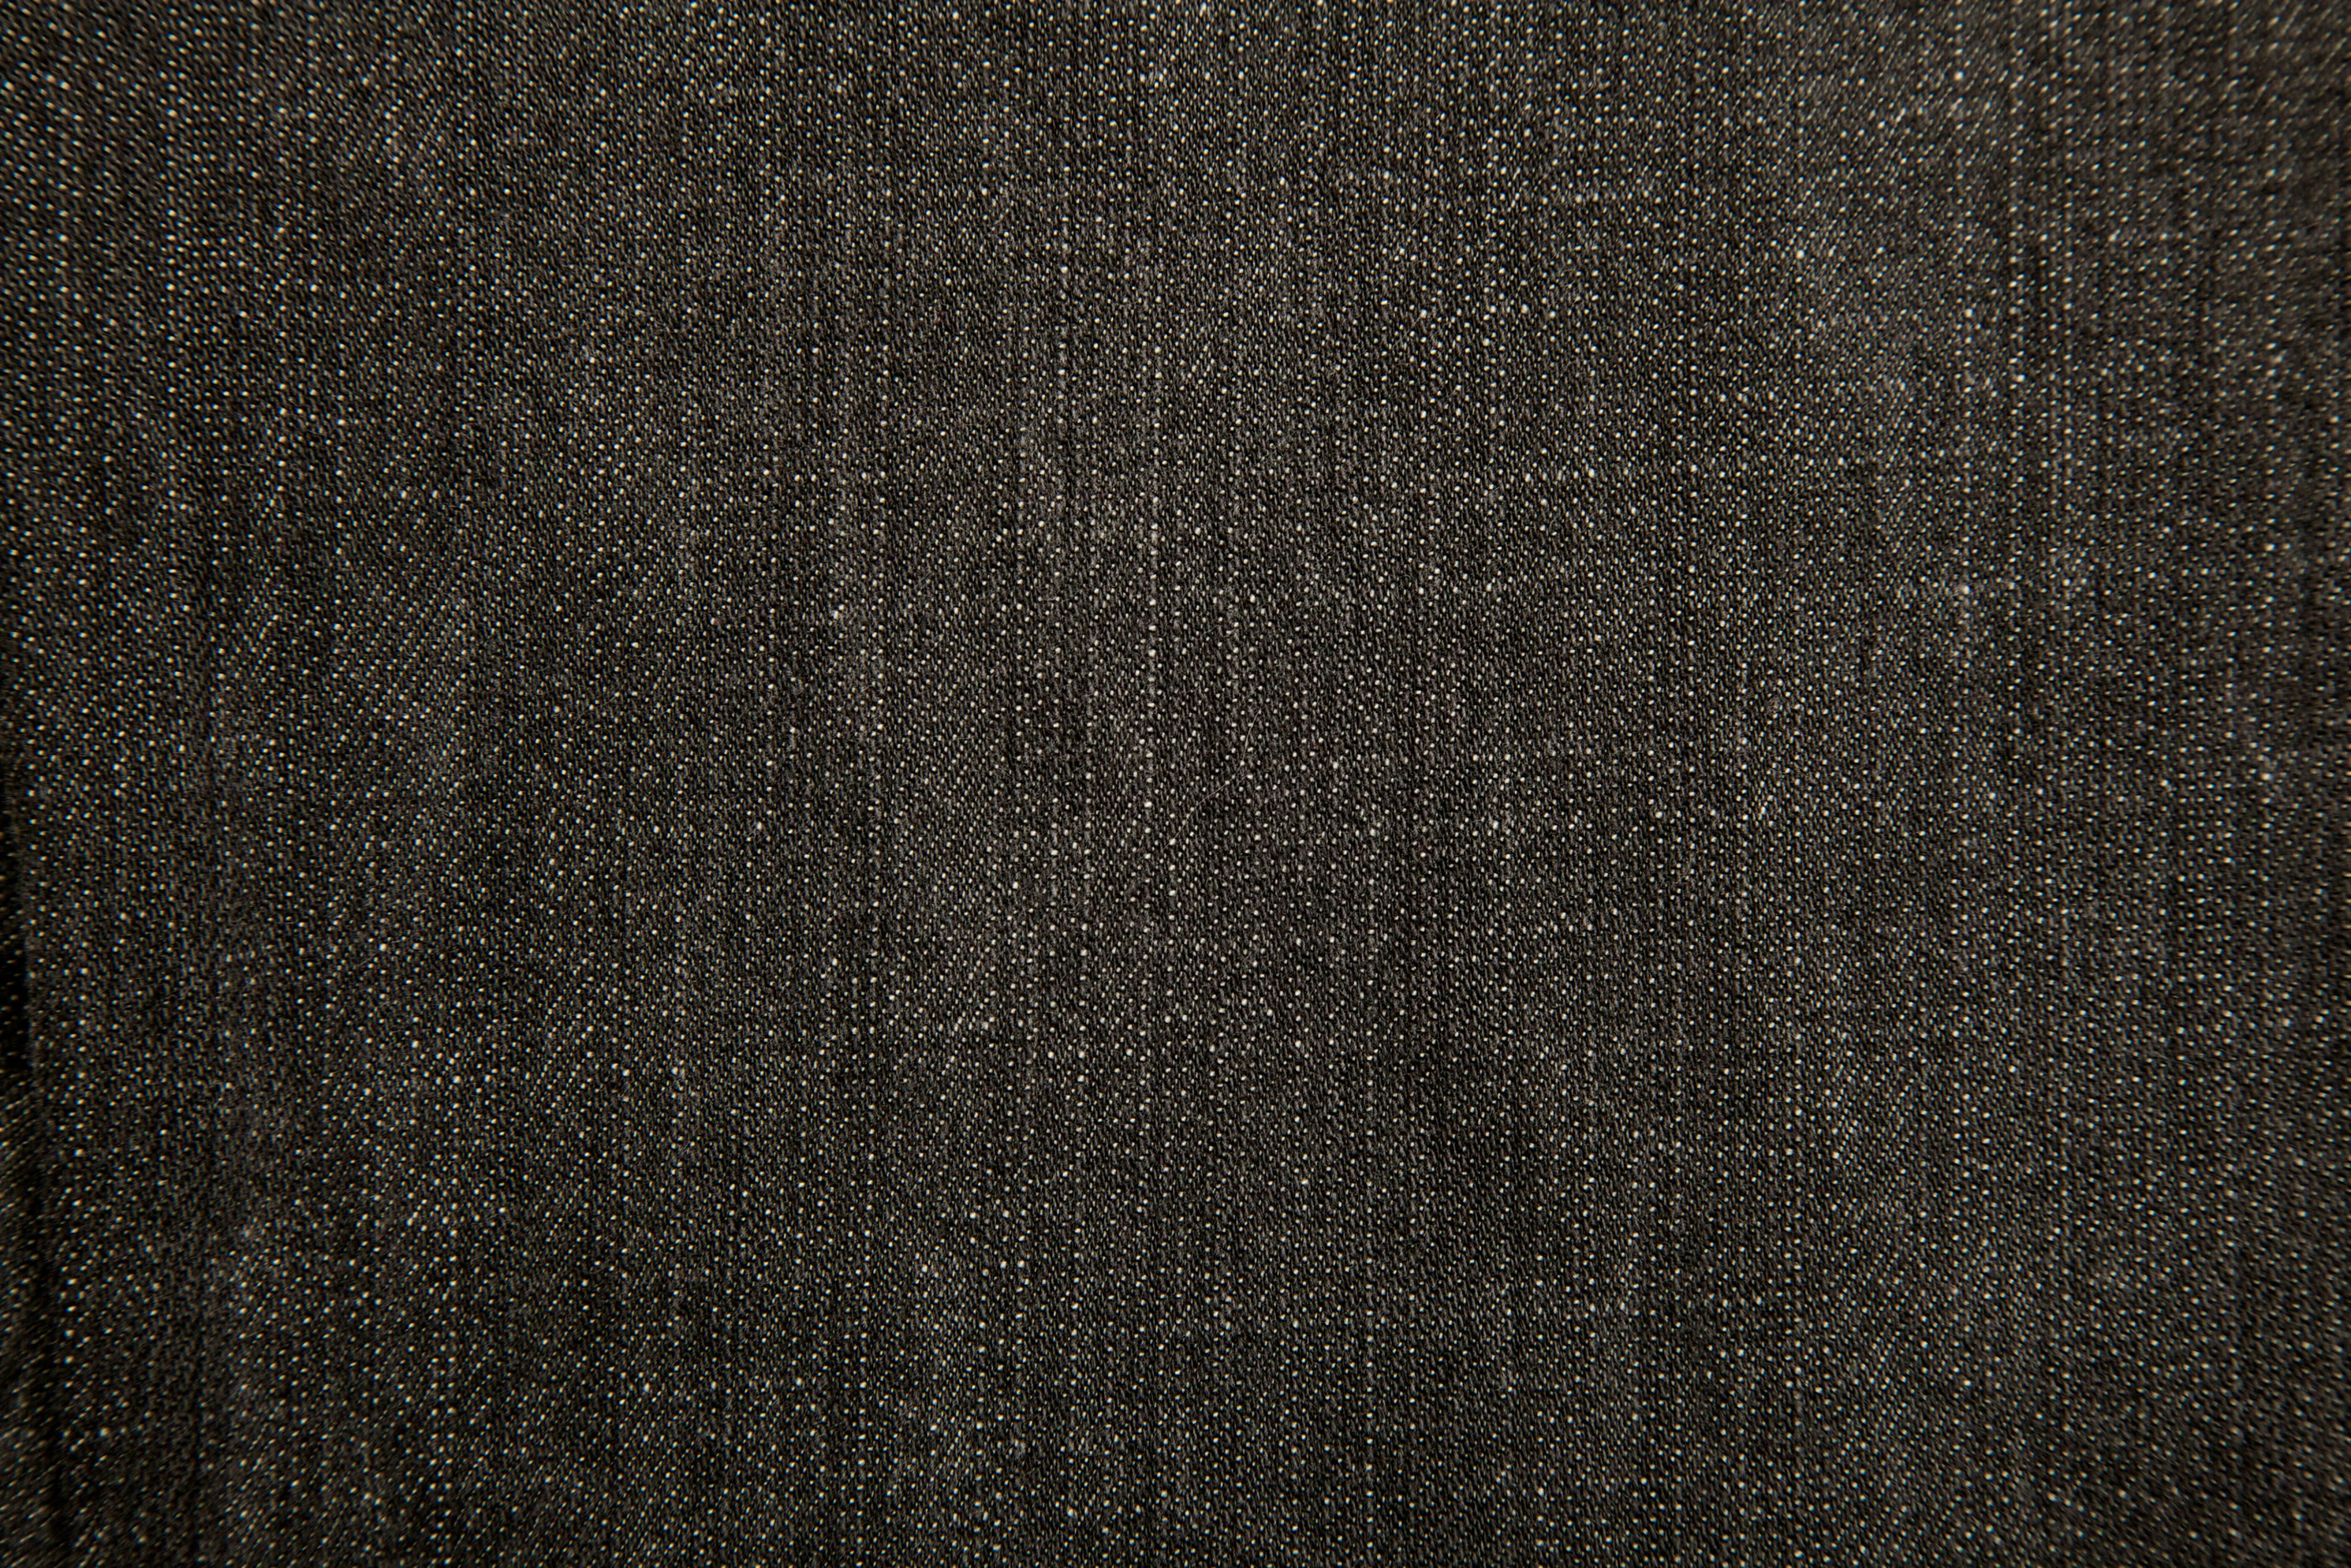 Текстура черной джинсовой ткани, скачать фото, фон, джинсы, джинса, jeans texture, background